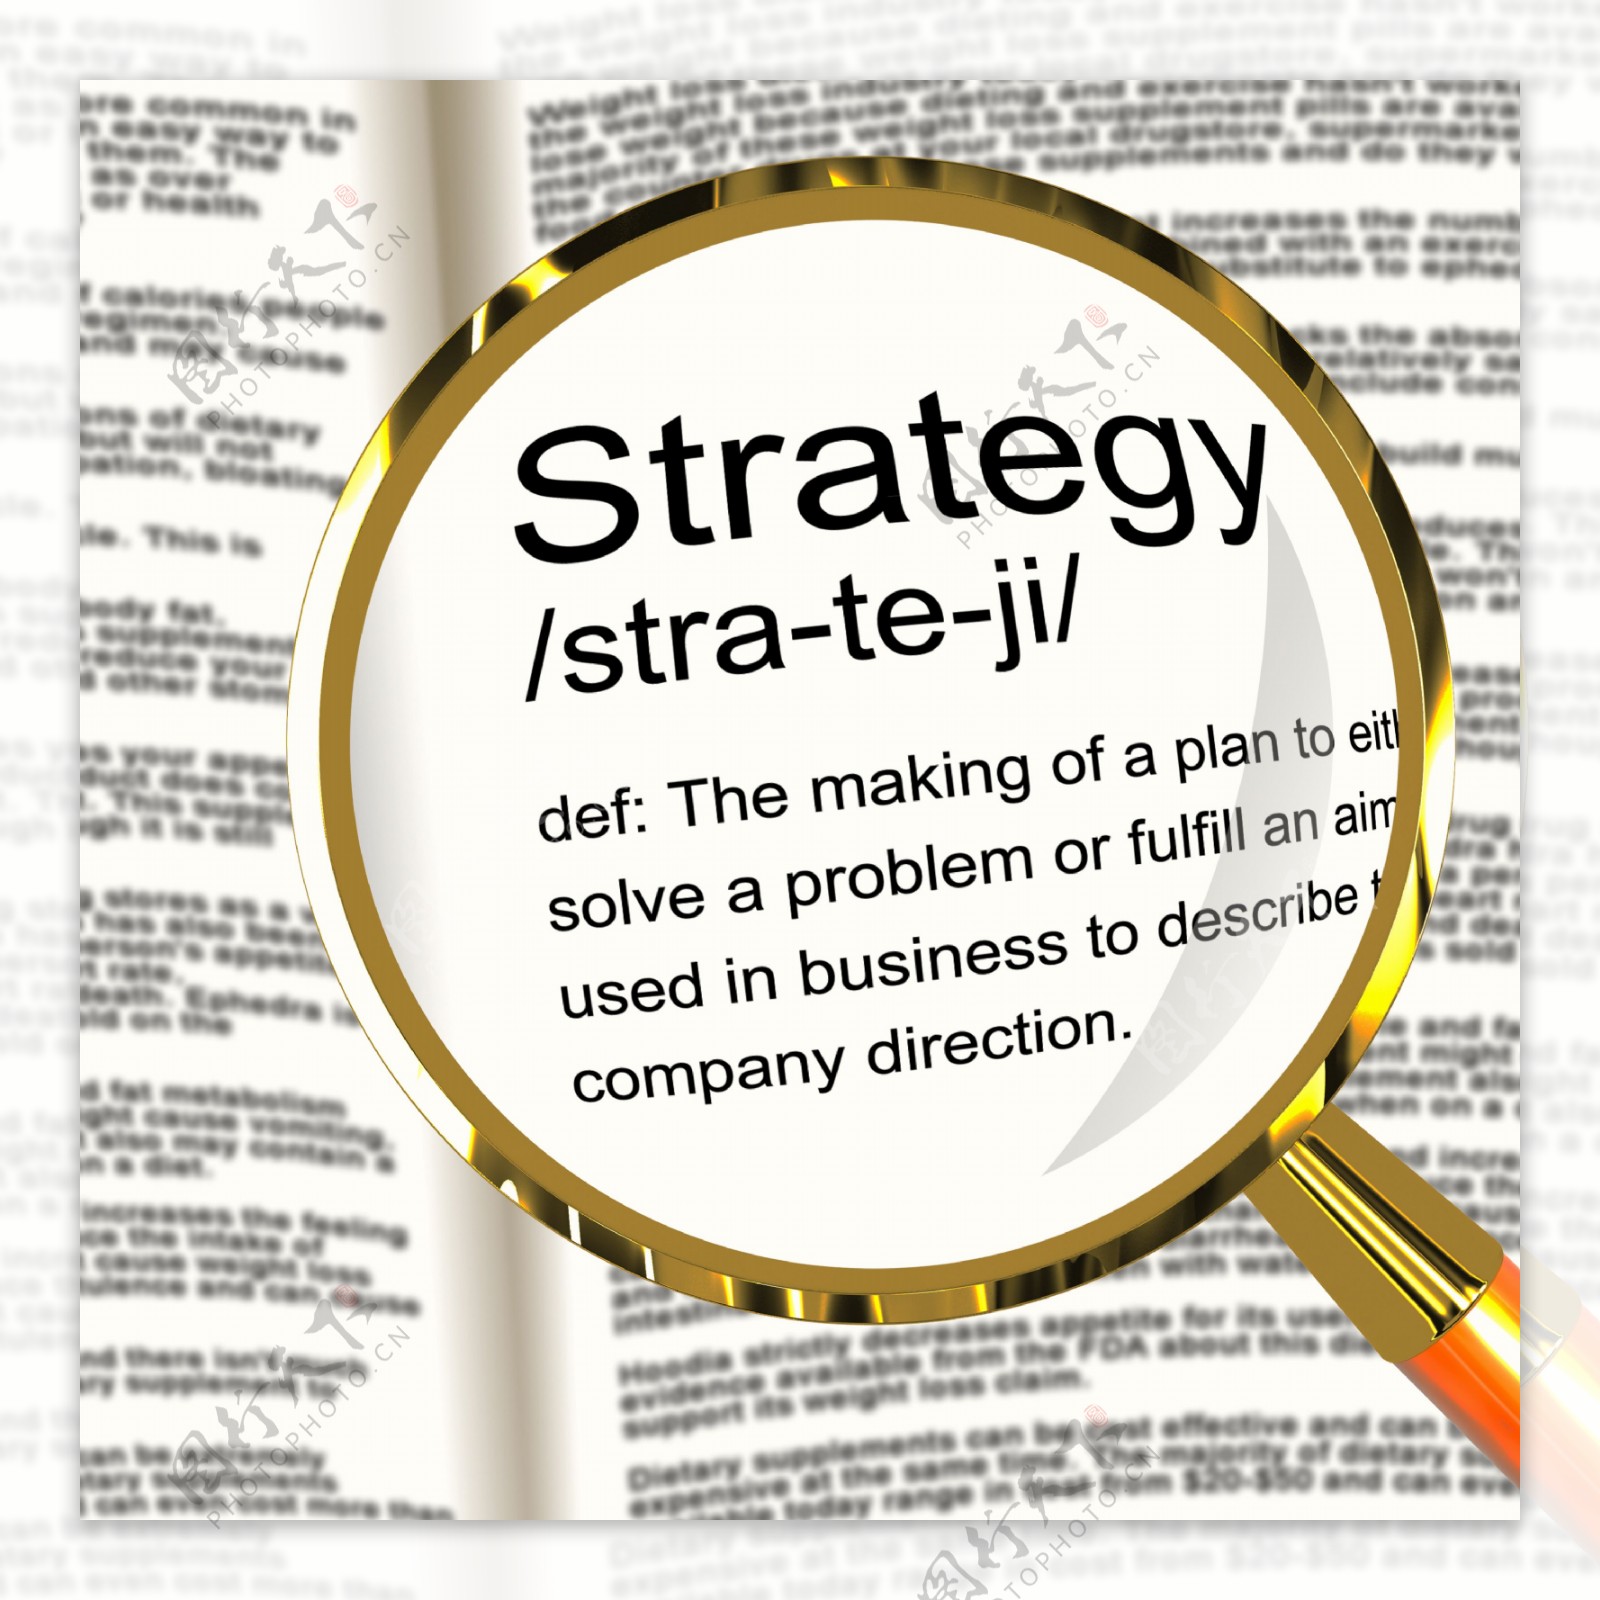 放大显示定义战略规划的组织和领导